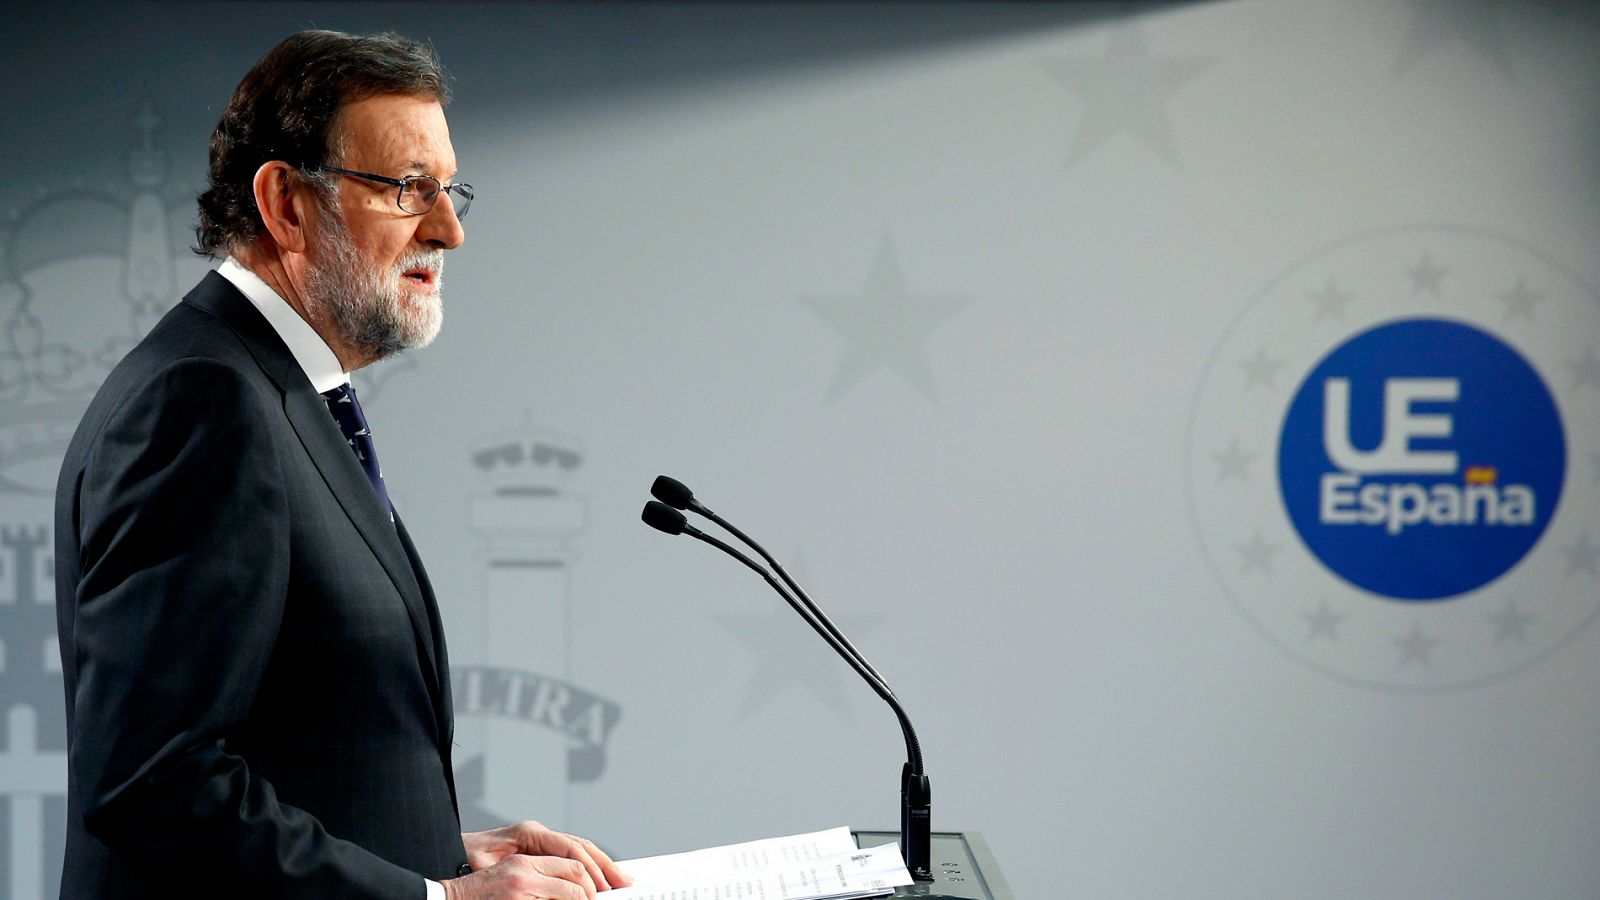 El presidente del Gobierno, Mariano Rajoy, durante la rueda de prensa ofrecida al término de la reunión del Consejo Europeo en Bruselas